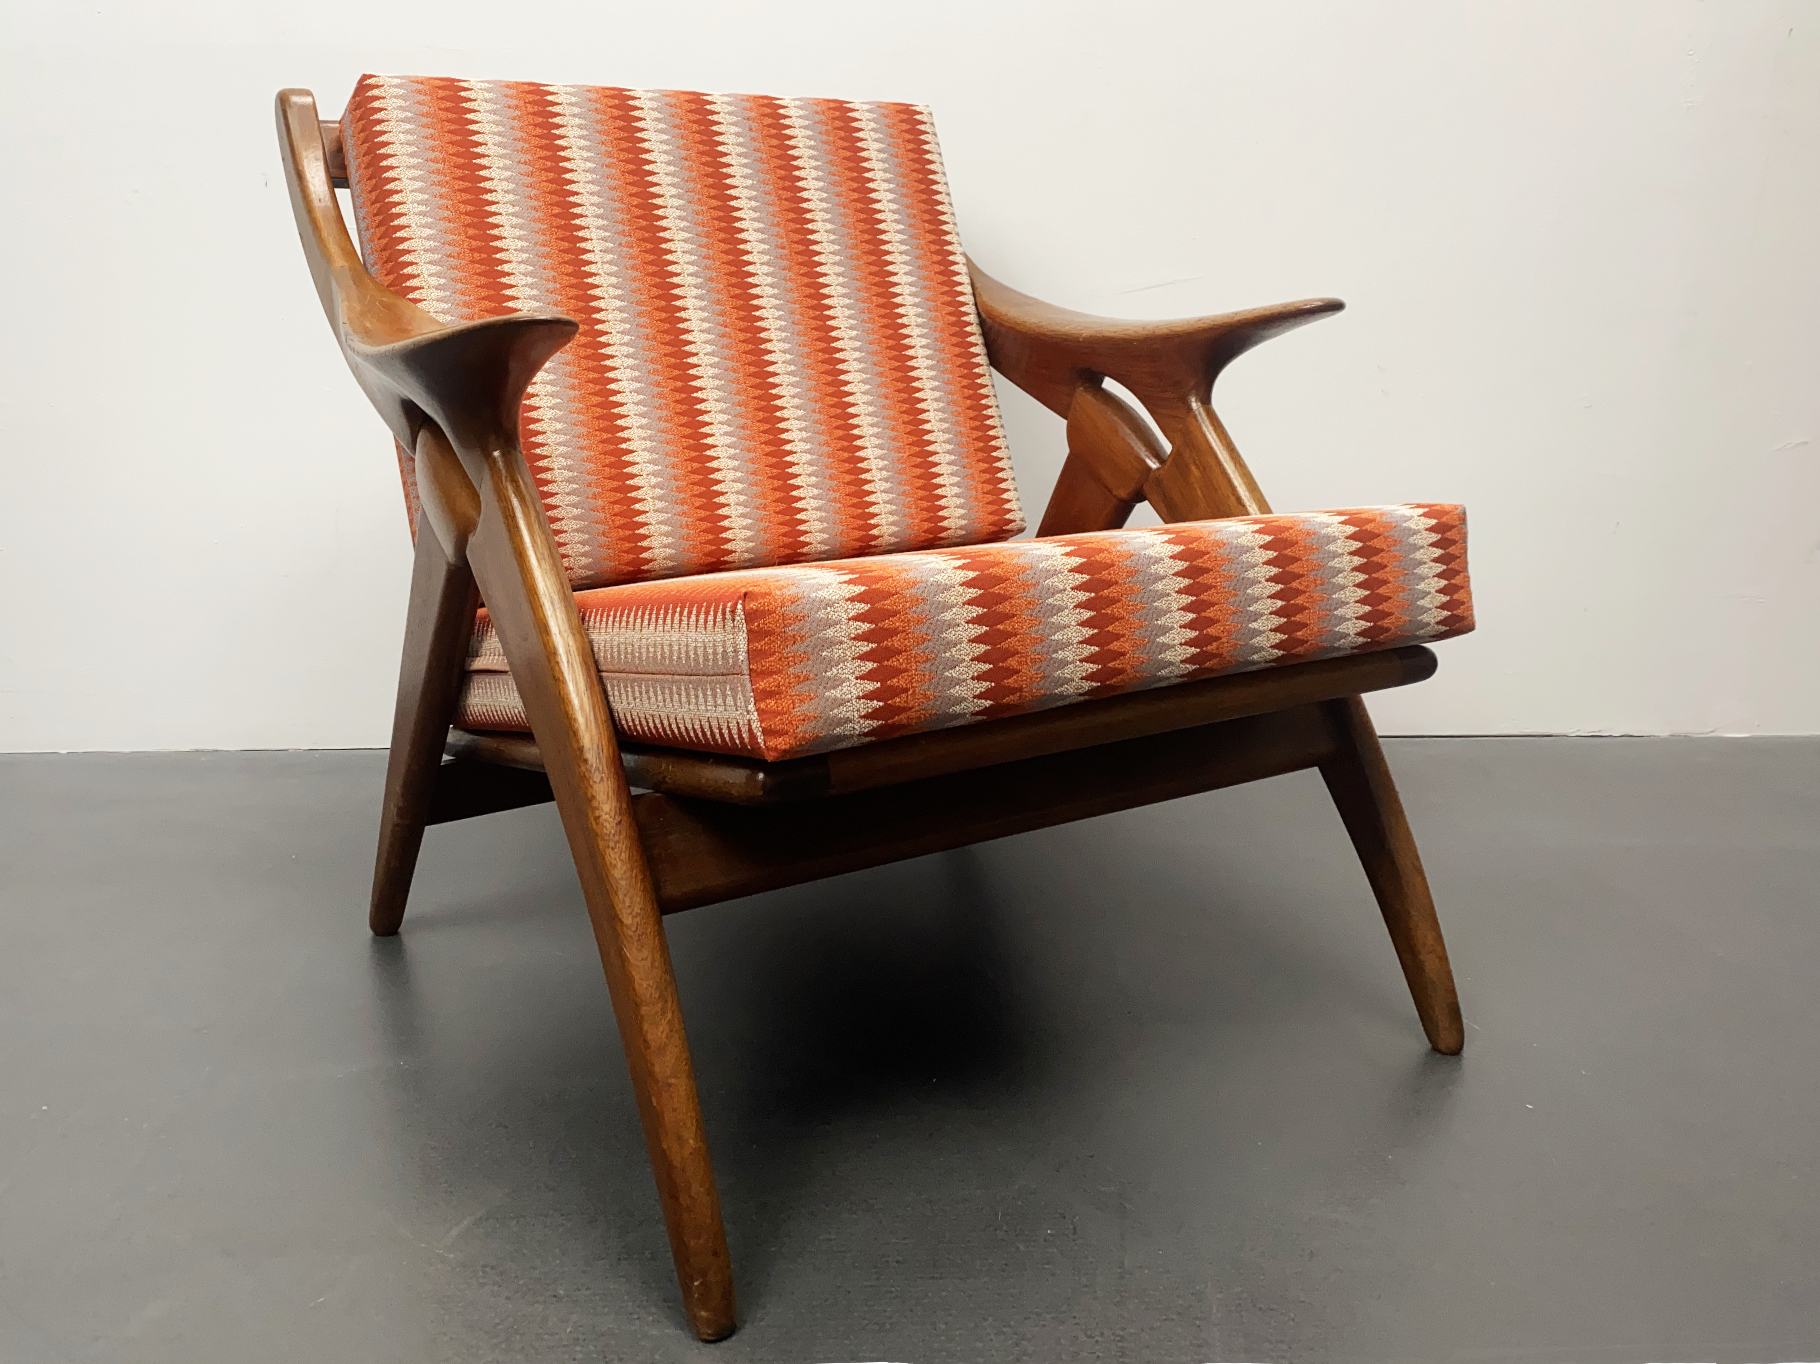 Sessel / Armlehnstuhl “The Knot“, Teak Holz, von De Ster Gelderland, Niederlande, 1960er Jahre.  Polster und Stoff wurden erneuert.